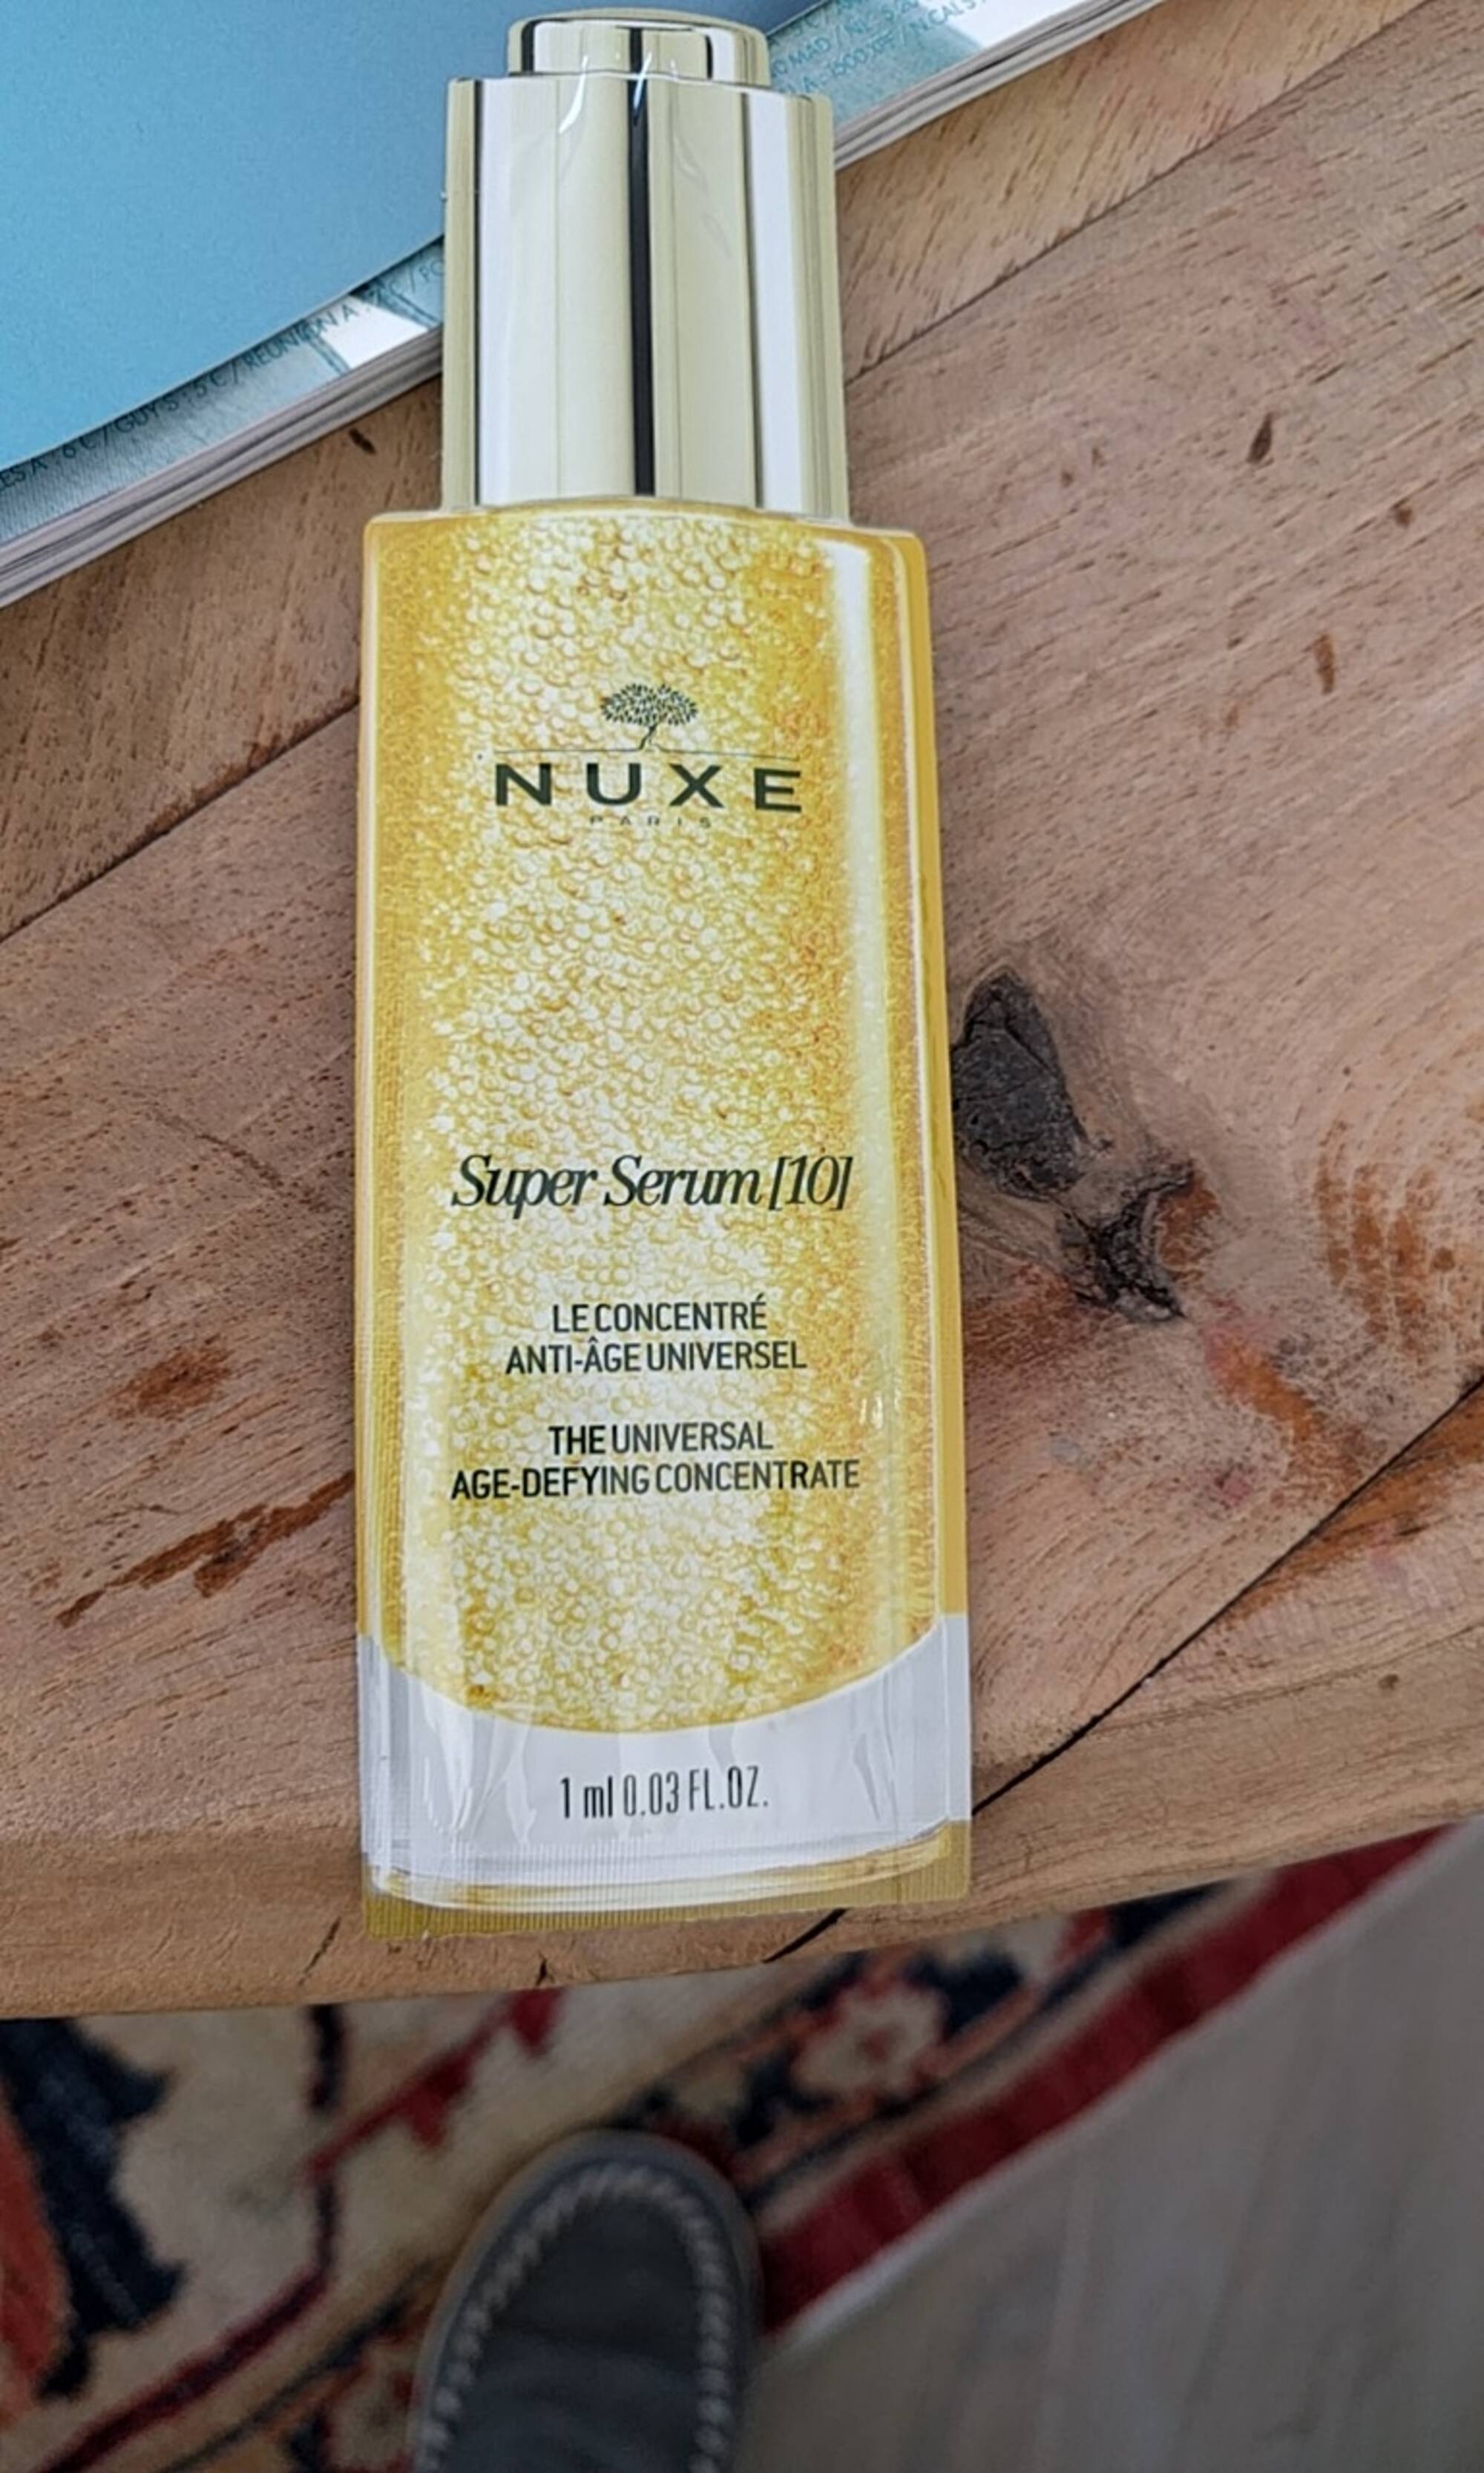 NUXE - Super serum [10] - Le concentré anti-âge universel